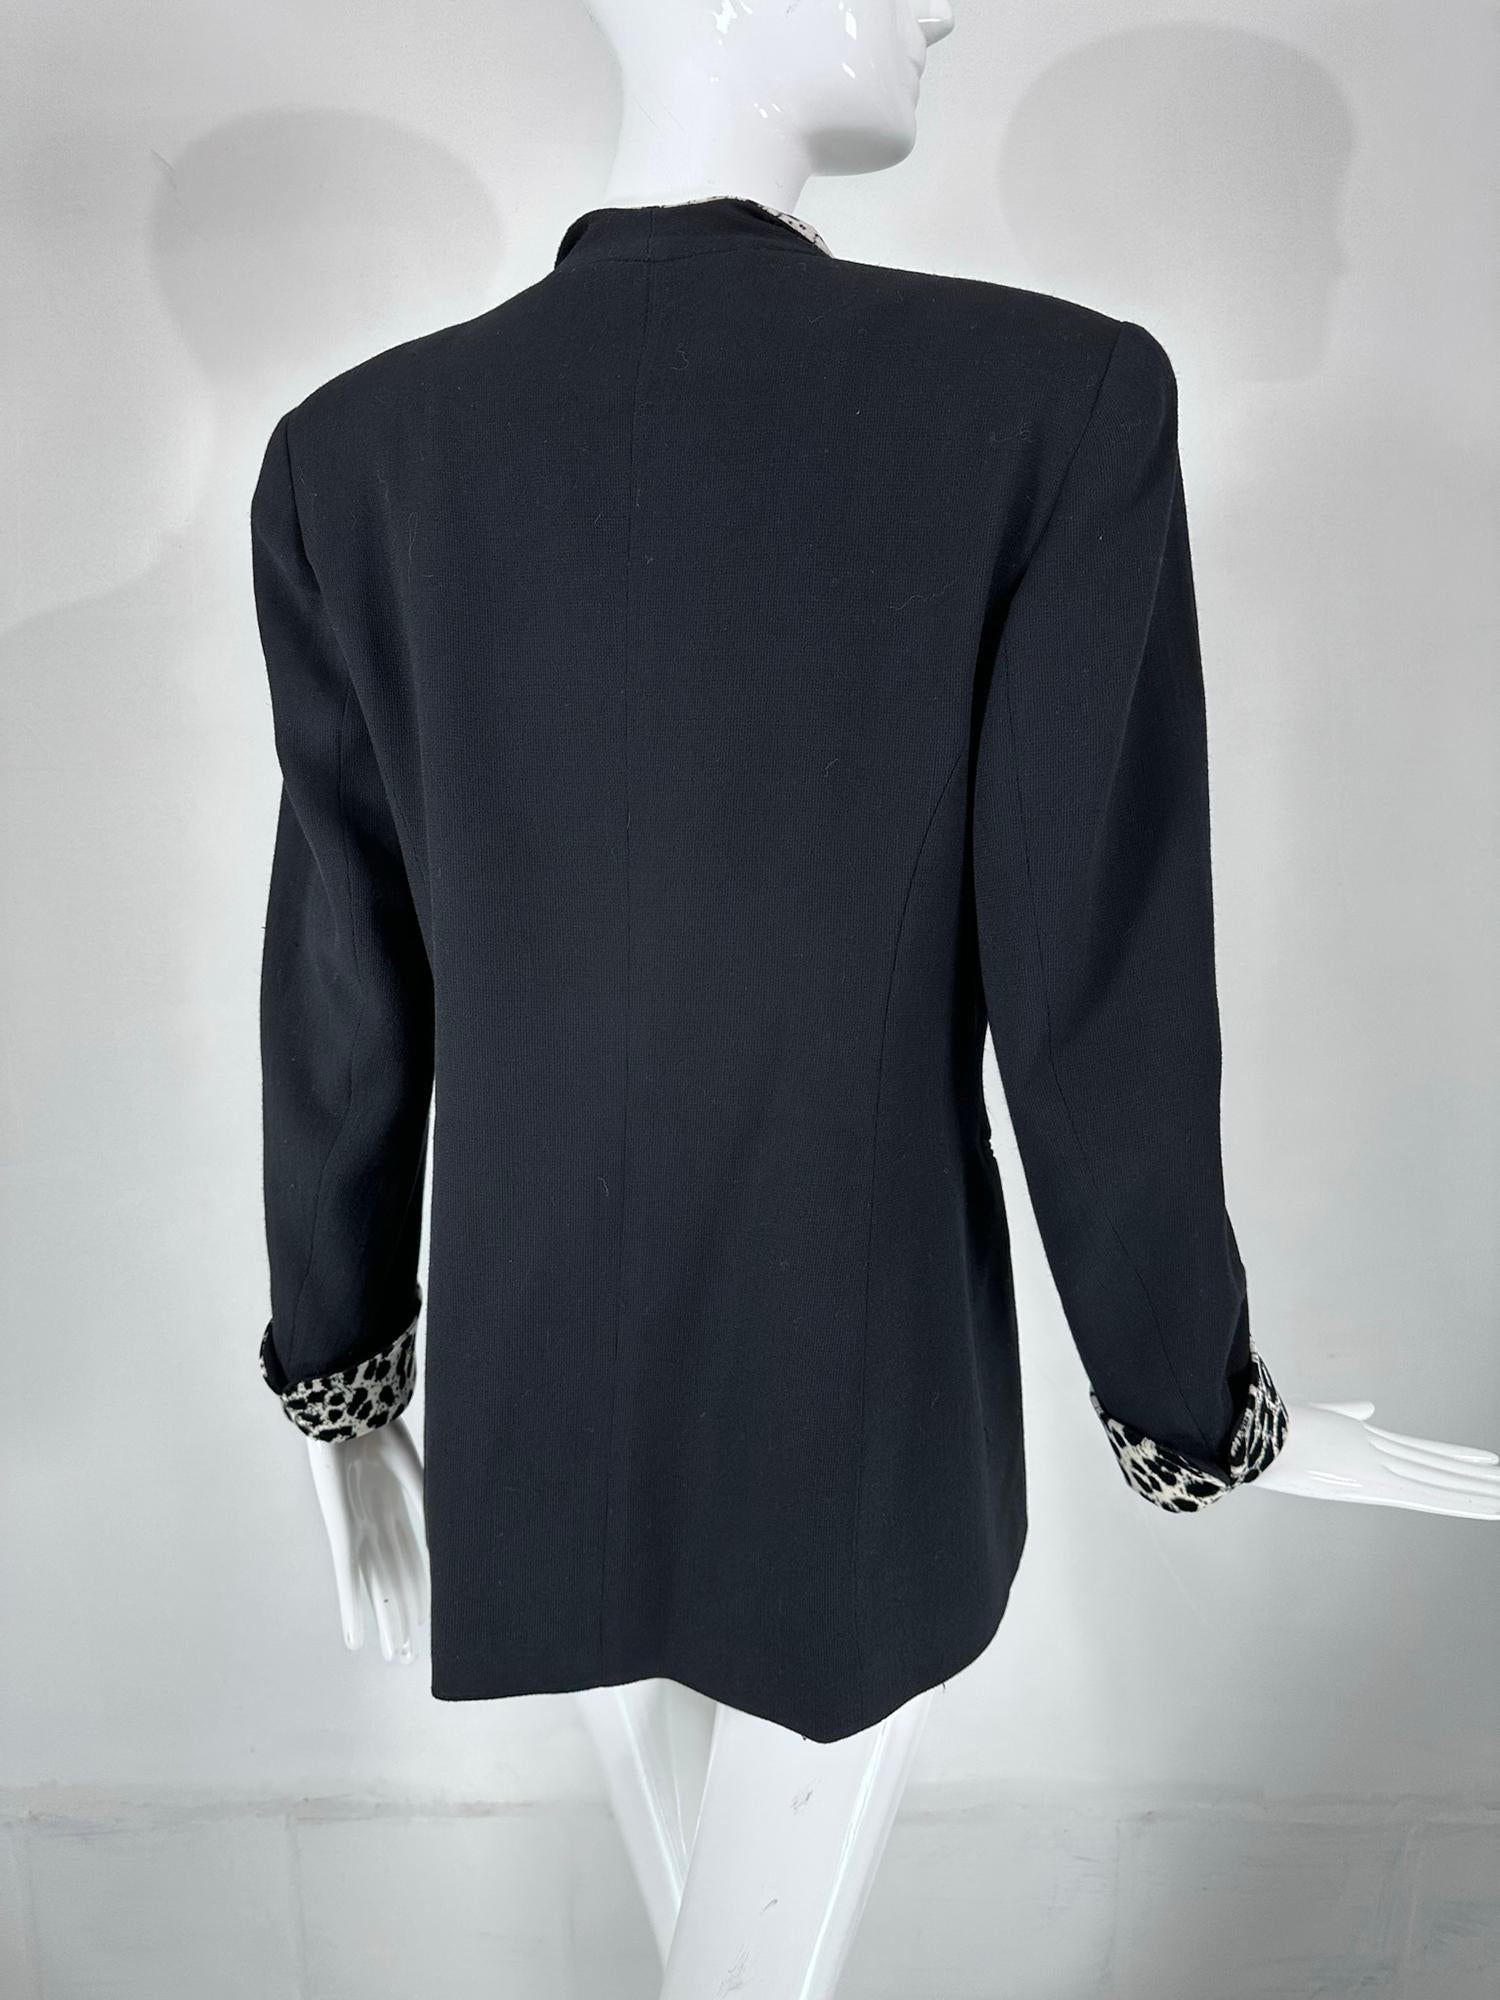 Christian Dior Black Princess Seam Tuxedo Jacket Black White Velvet Lapels 1990s For Sale 2